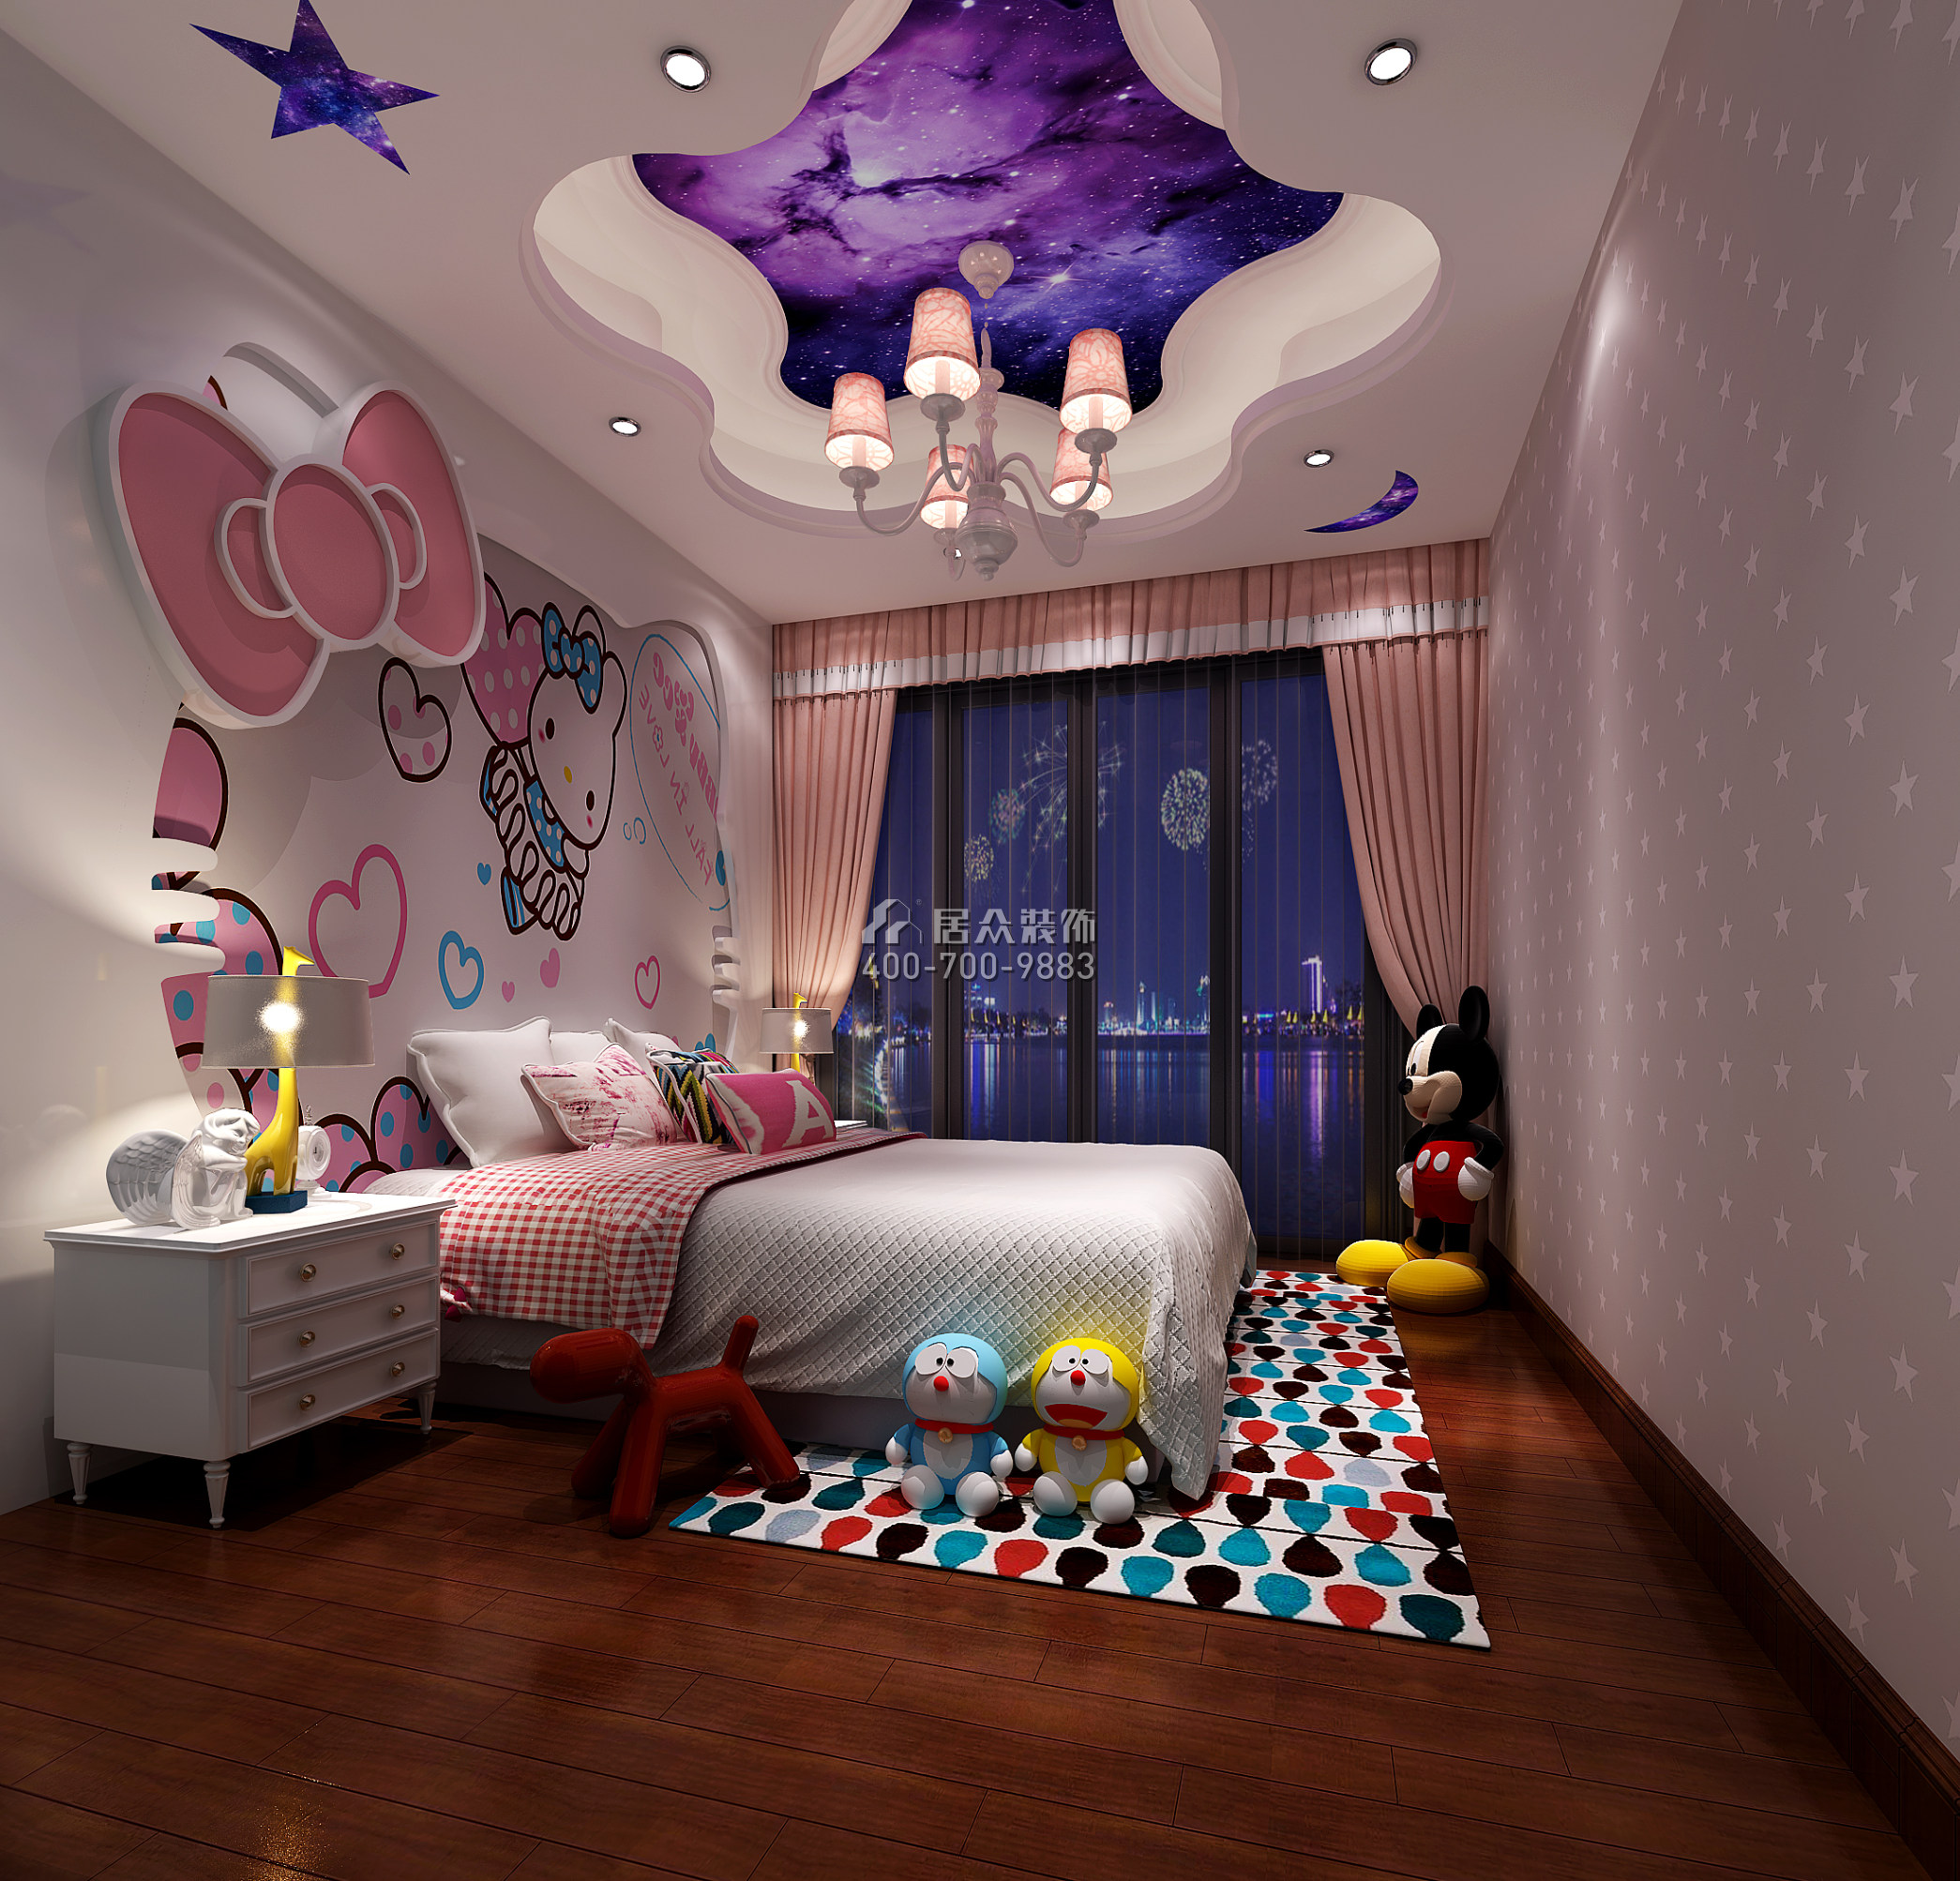 雅居樂雍華廷260平方米歐式風格別墅戶型兒童房裝修效果圖